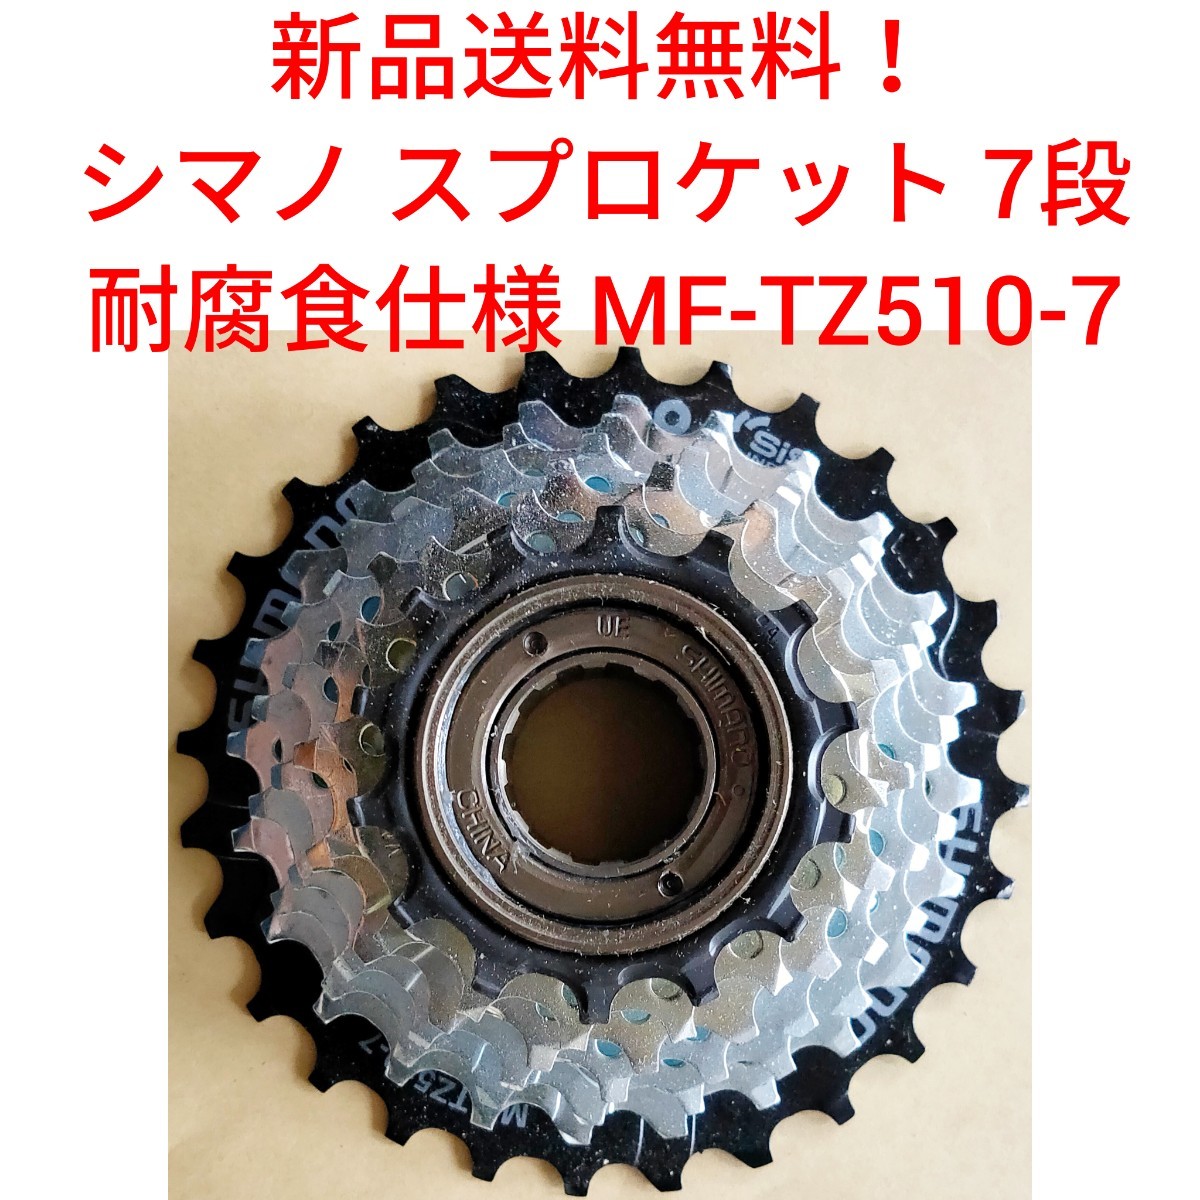 【新品送料無料】 スプロケット 7段 耐腐食 シマノ MF-TZ510-7 shimano ボスフリー 自転車 変速 ギア チェーン 14-28 関連 MF-TZ500の画像1